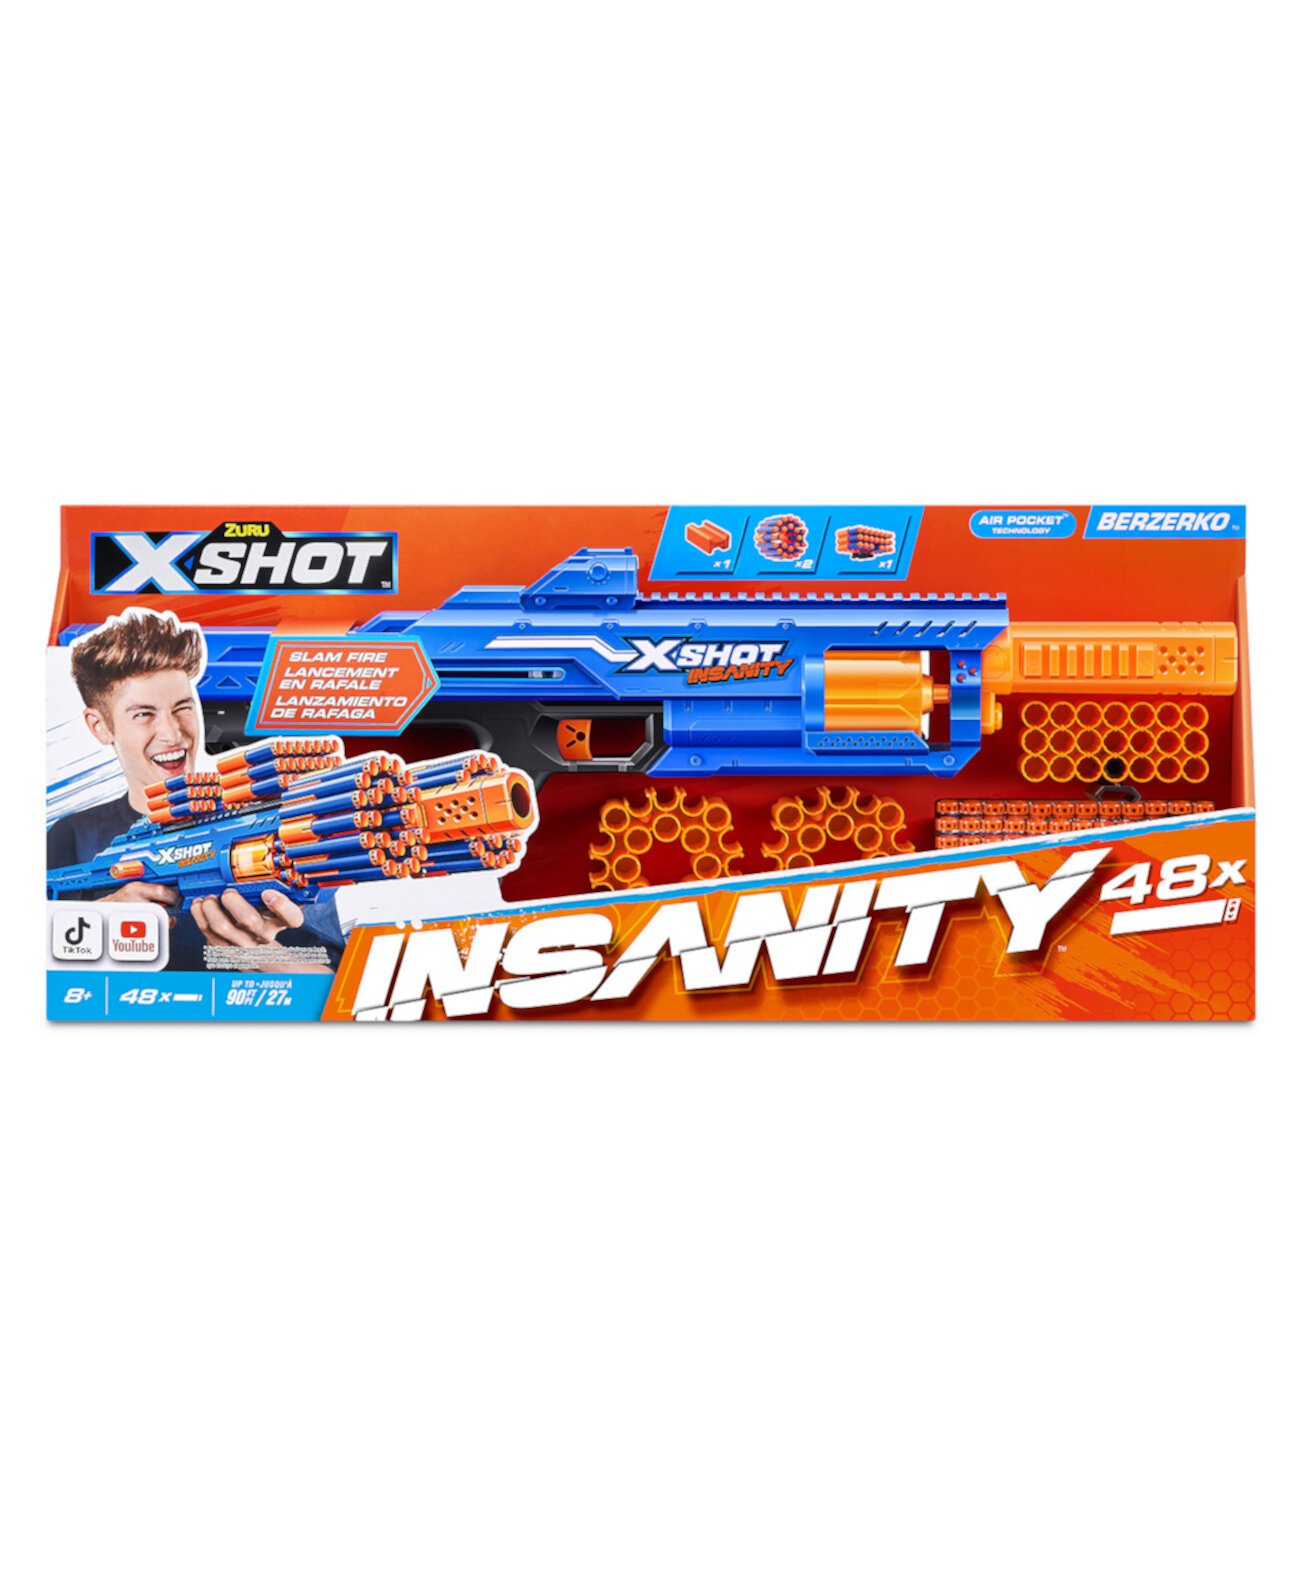 Insanity Series 1 Берзерко 8 выстрелов, 48 дротиков X-Shot